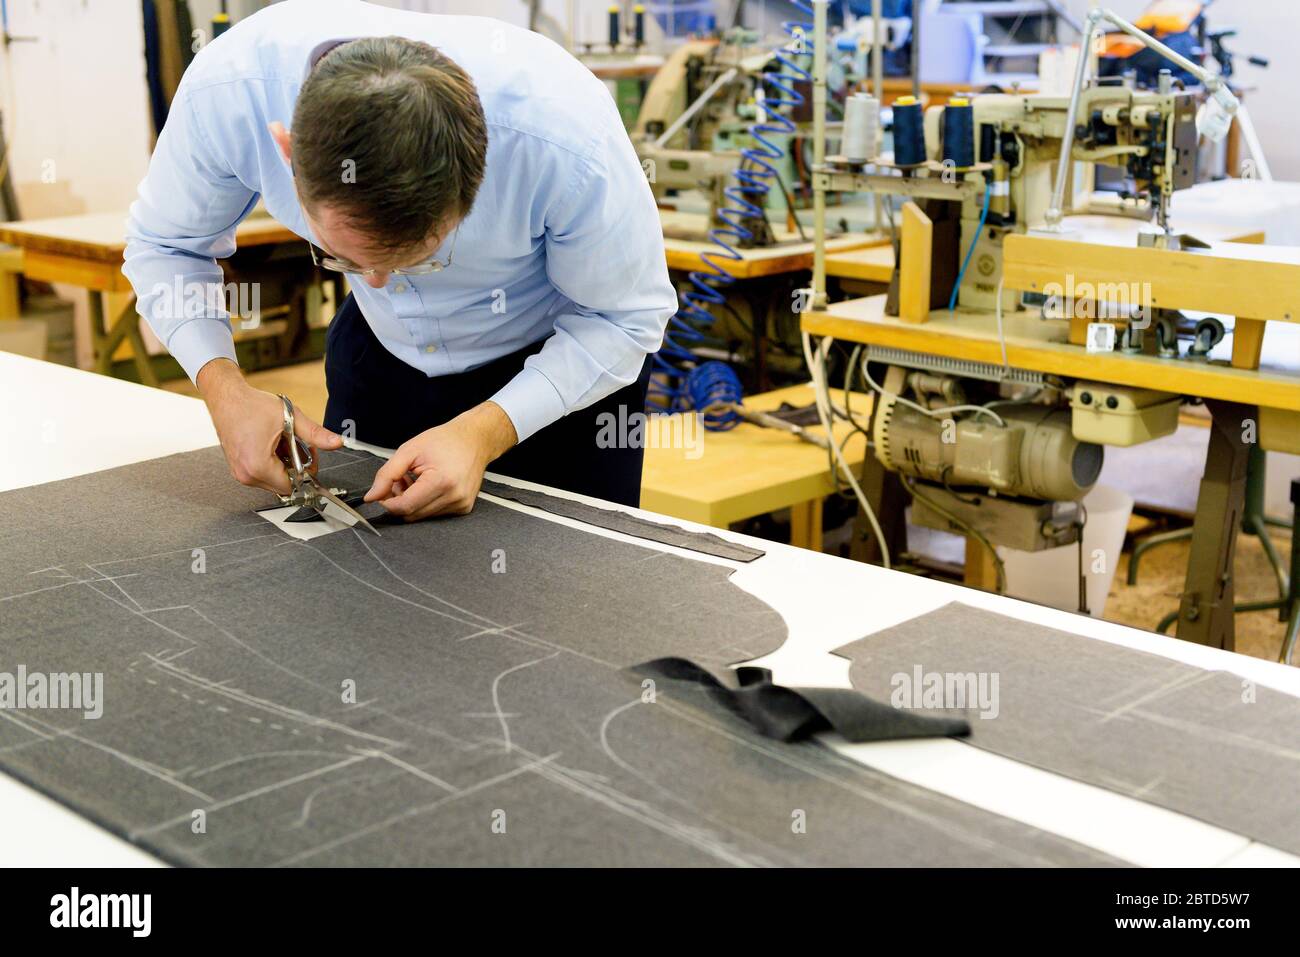 Cintrer sur mesure un tissu de découpe d'établi sur lequel un motif a été enroulé dans un grand atelier industriel spacieux Banque D'Images